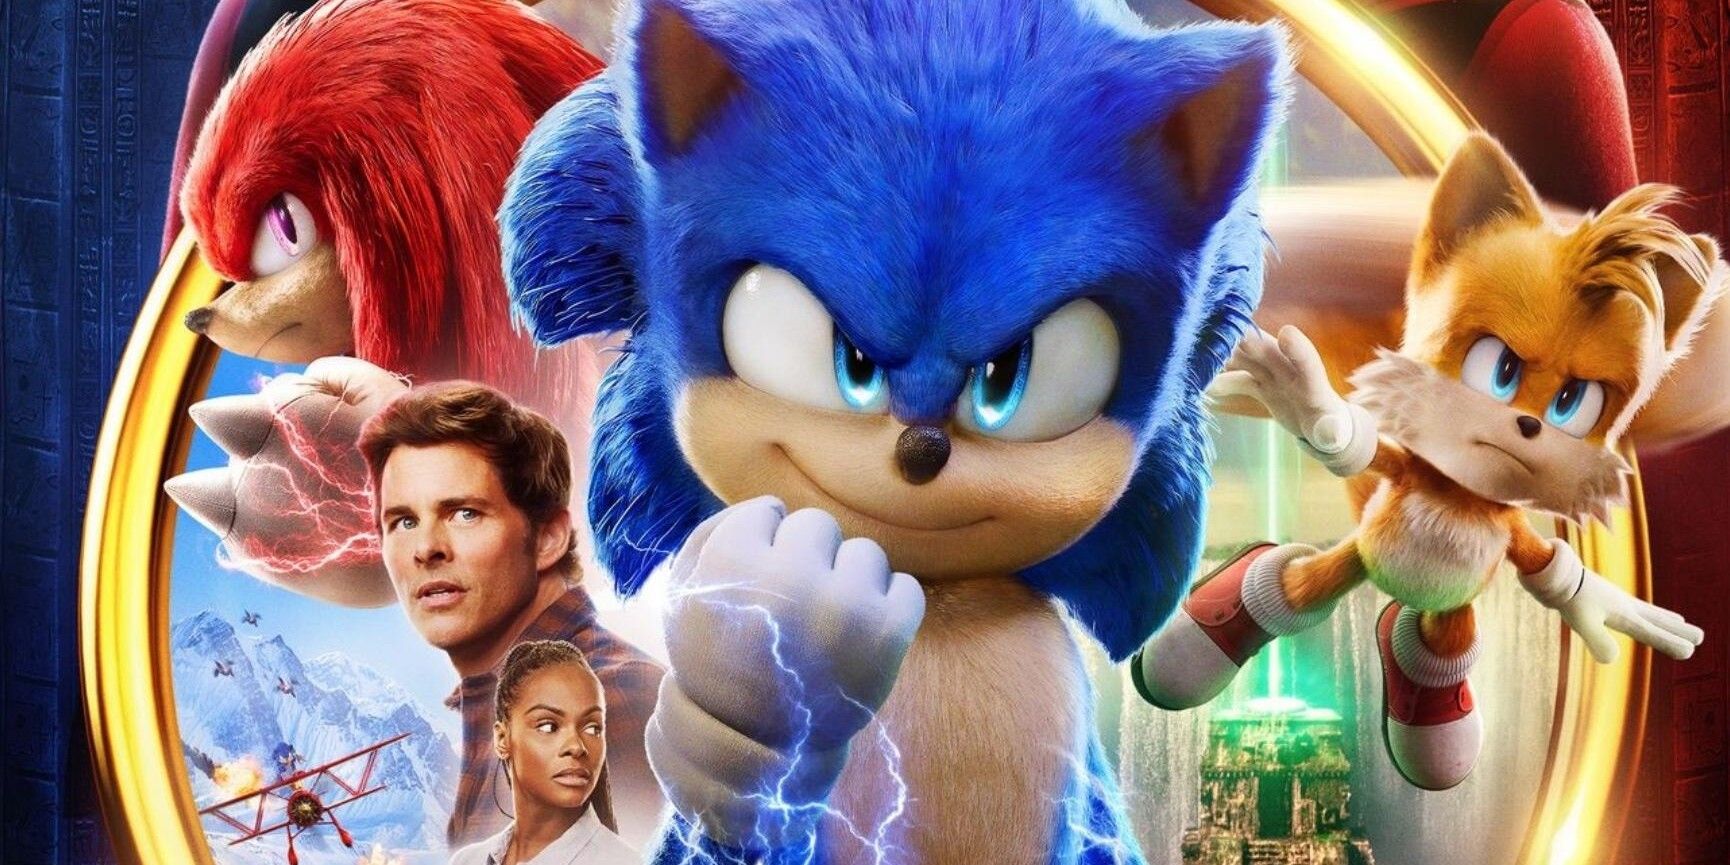  Sonic the Hedgehog 2 (Renewed) : Video Games